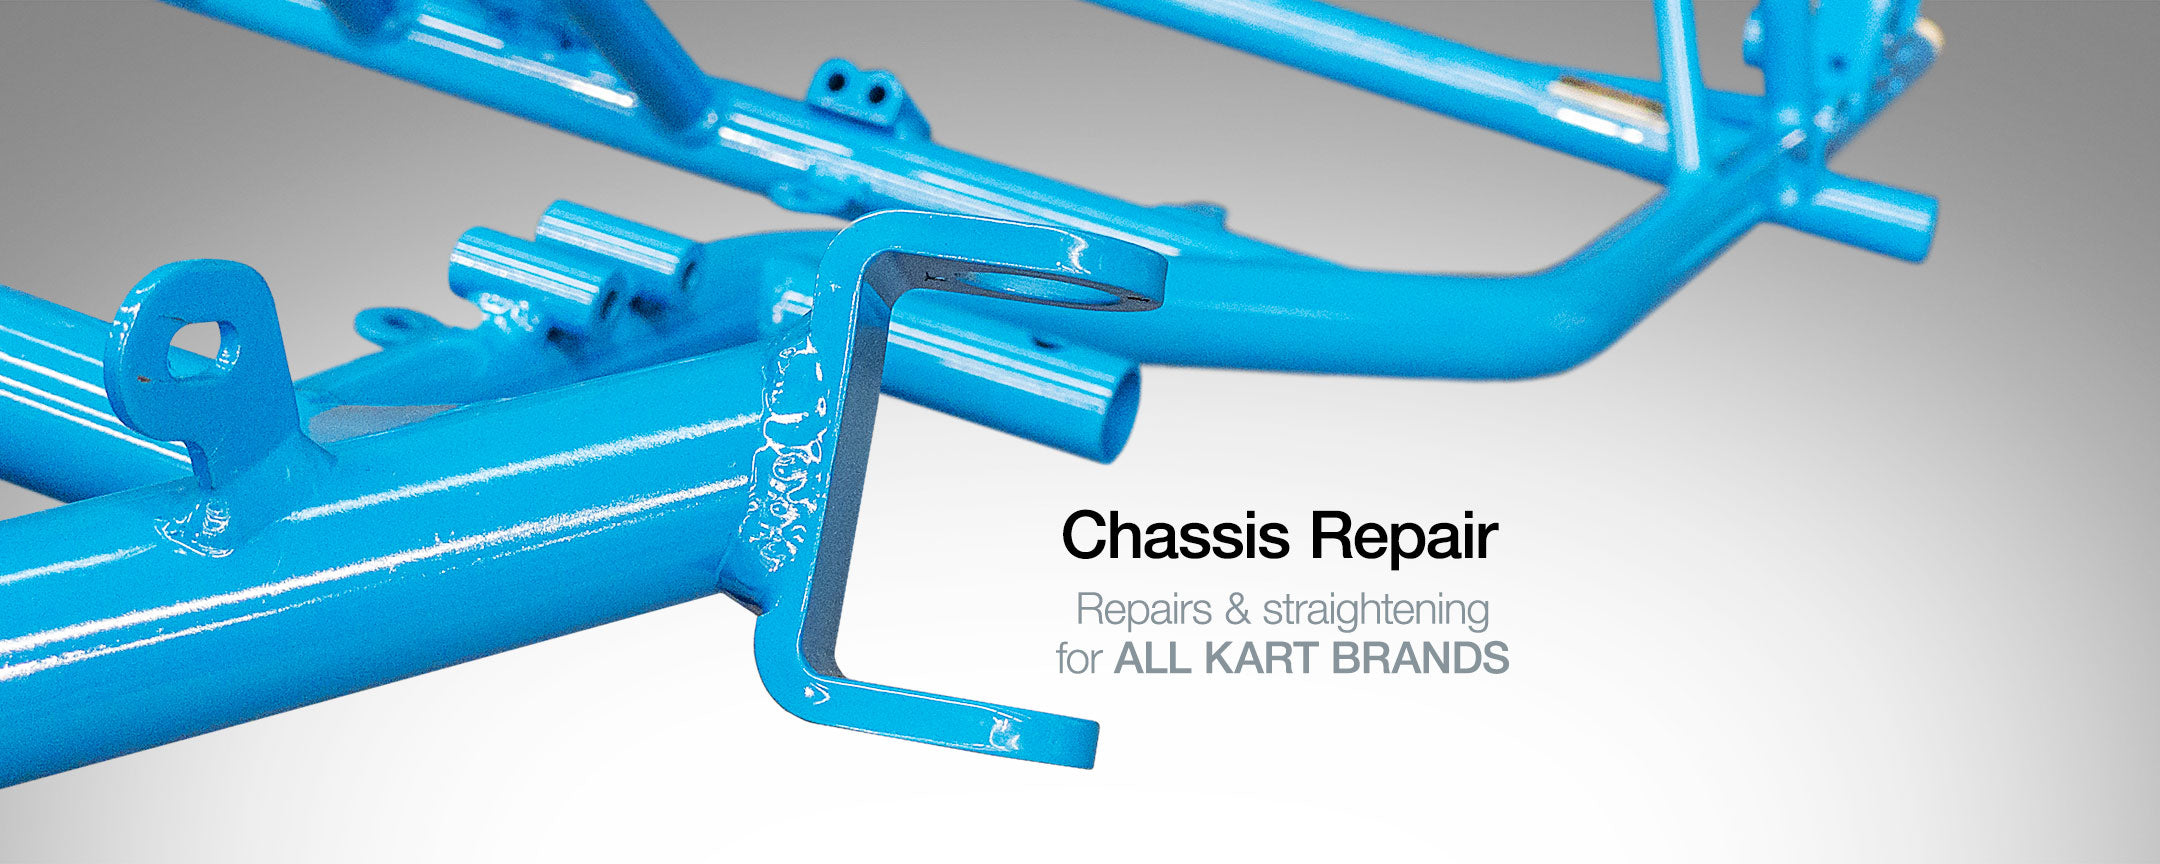 Go Kart Chassis Repair and straightening